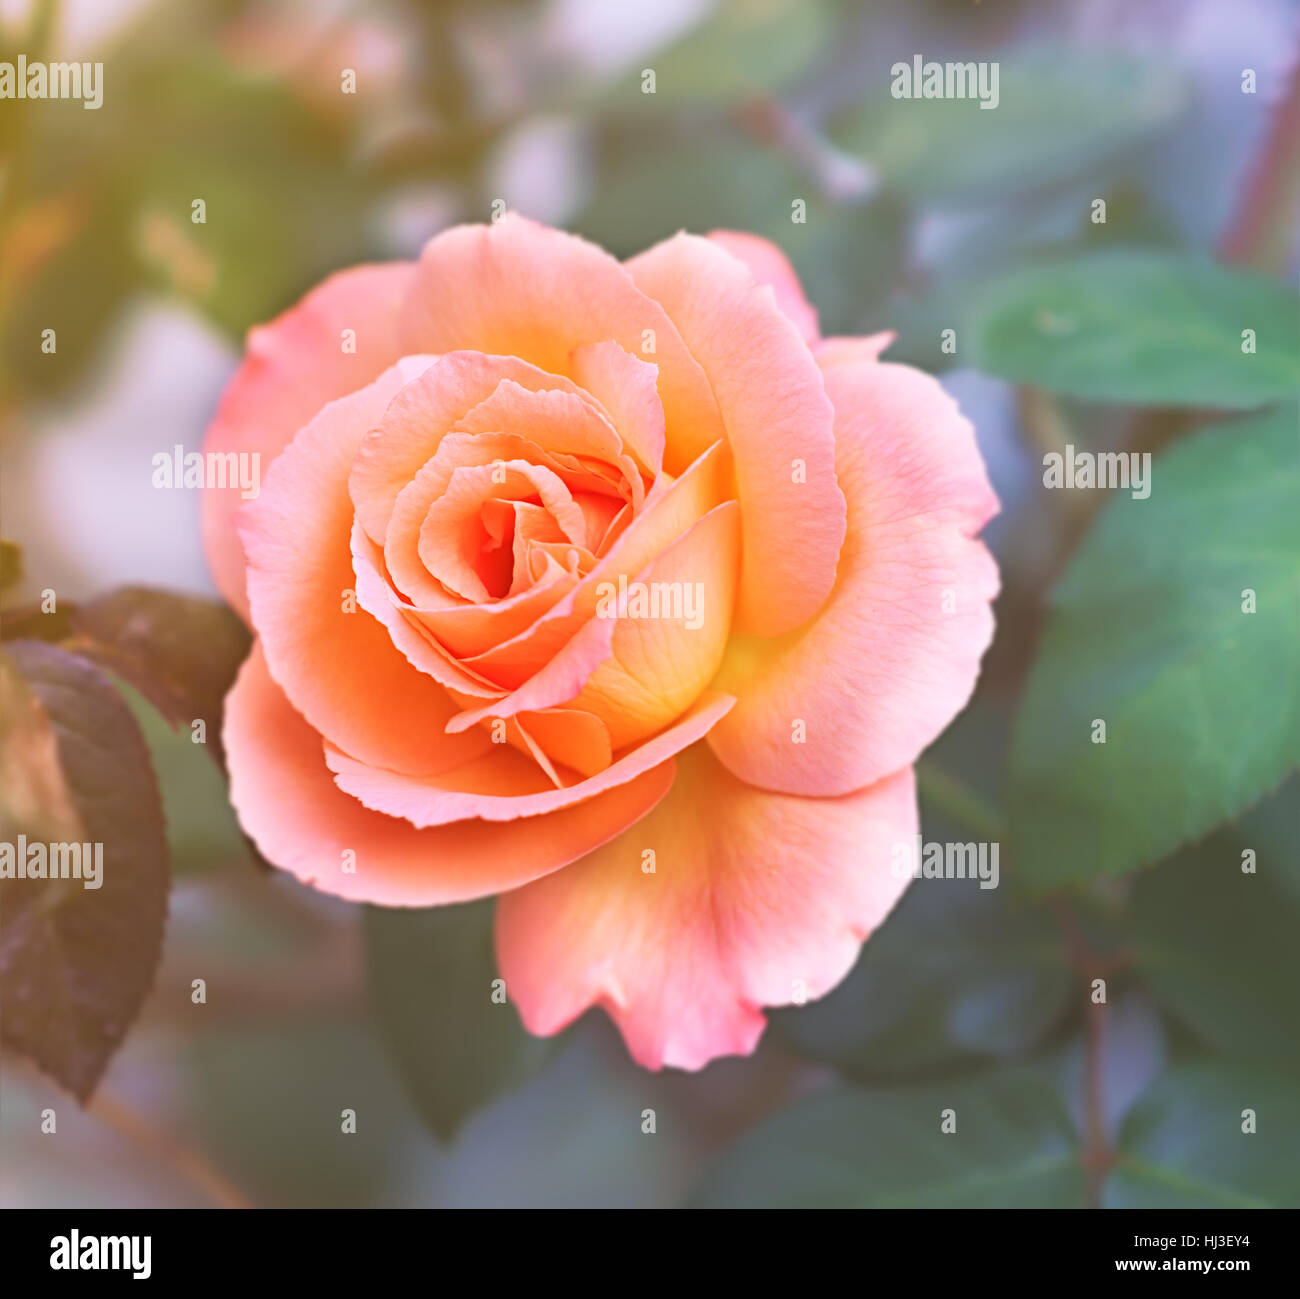 Abricot rose rose symbole de l'amour et la compassion sur un fond mou Banque D'Images